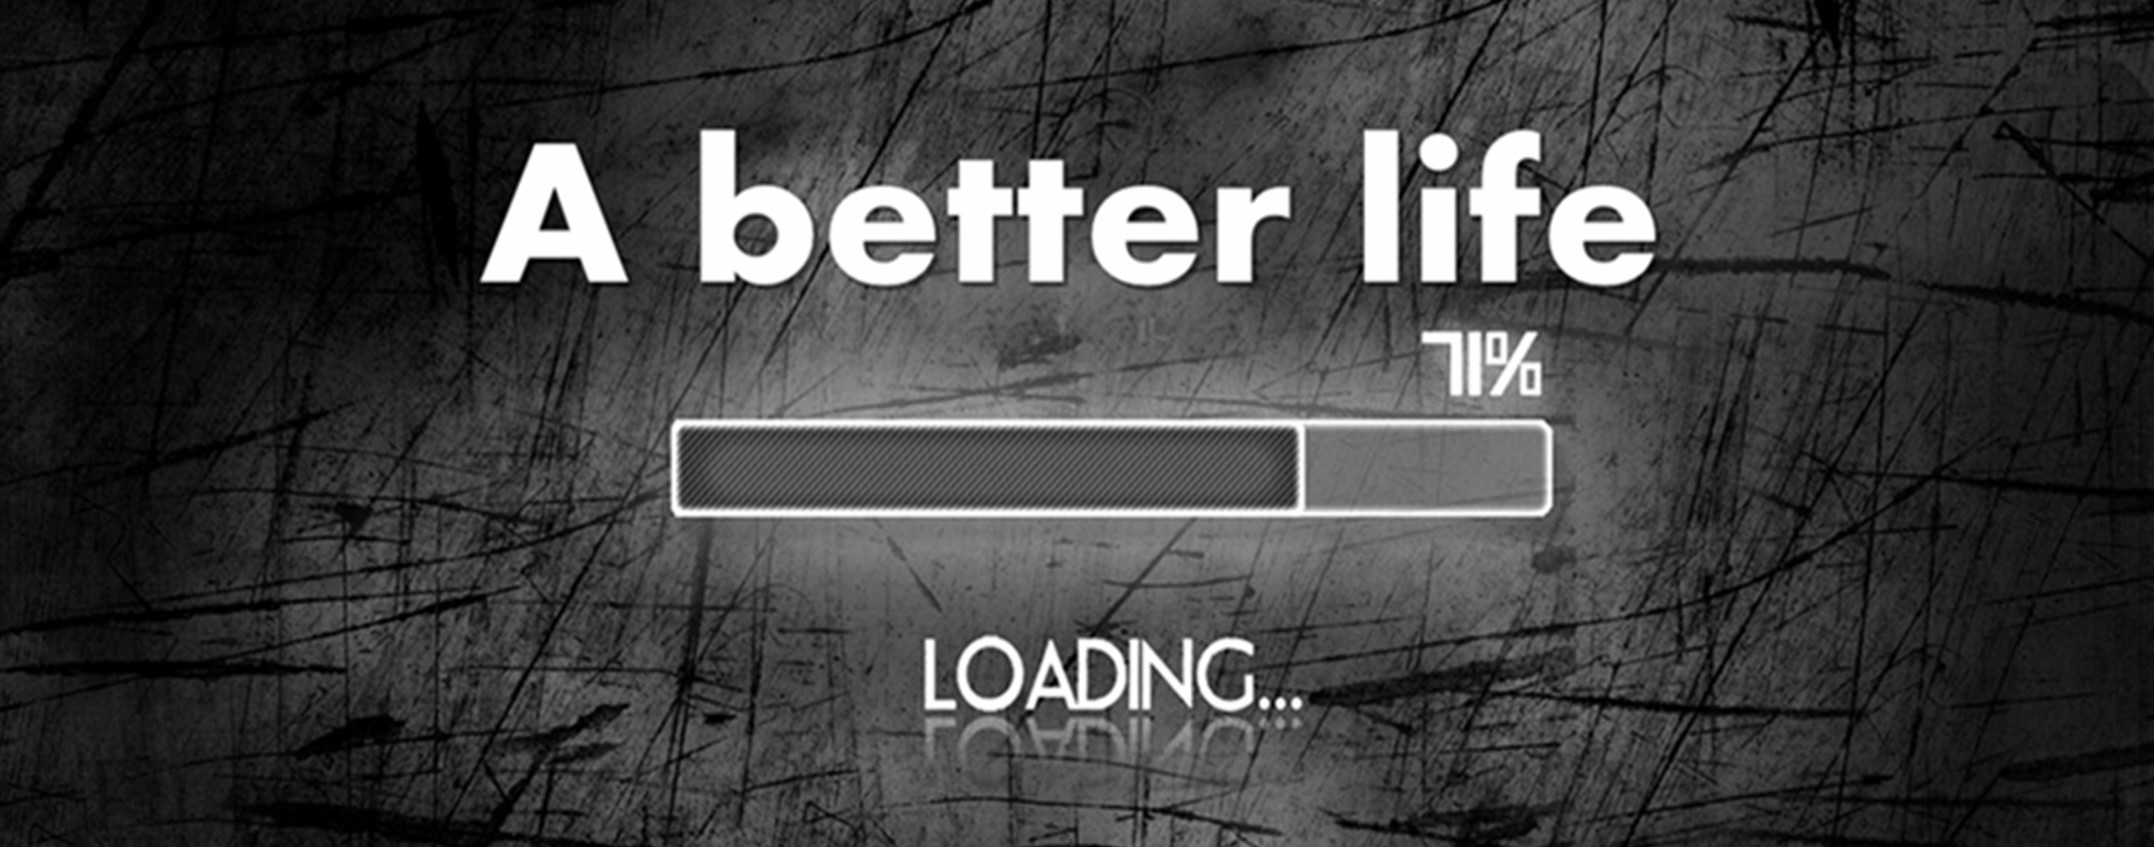 Better Life Loading - 2154x847 Wallpaper 